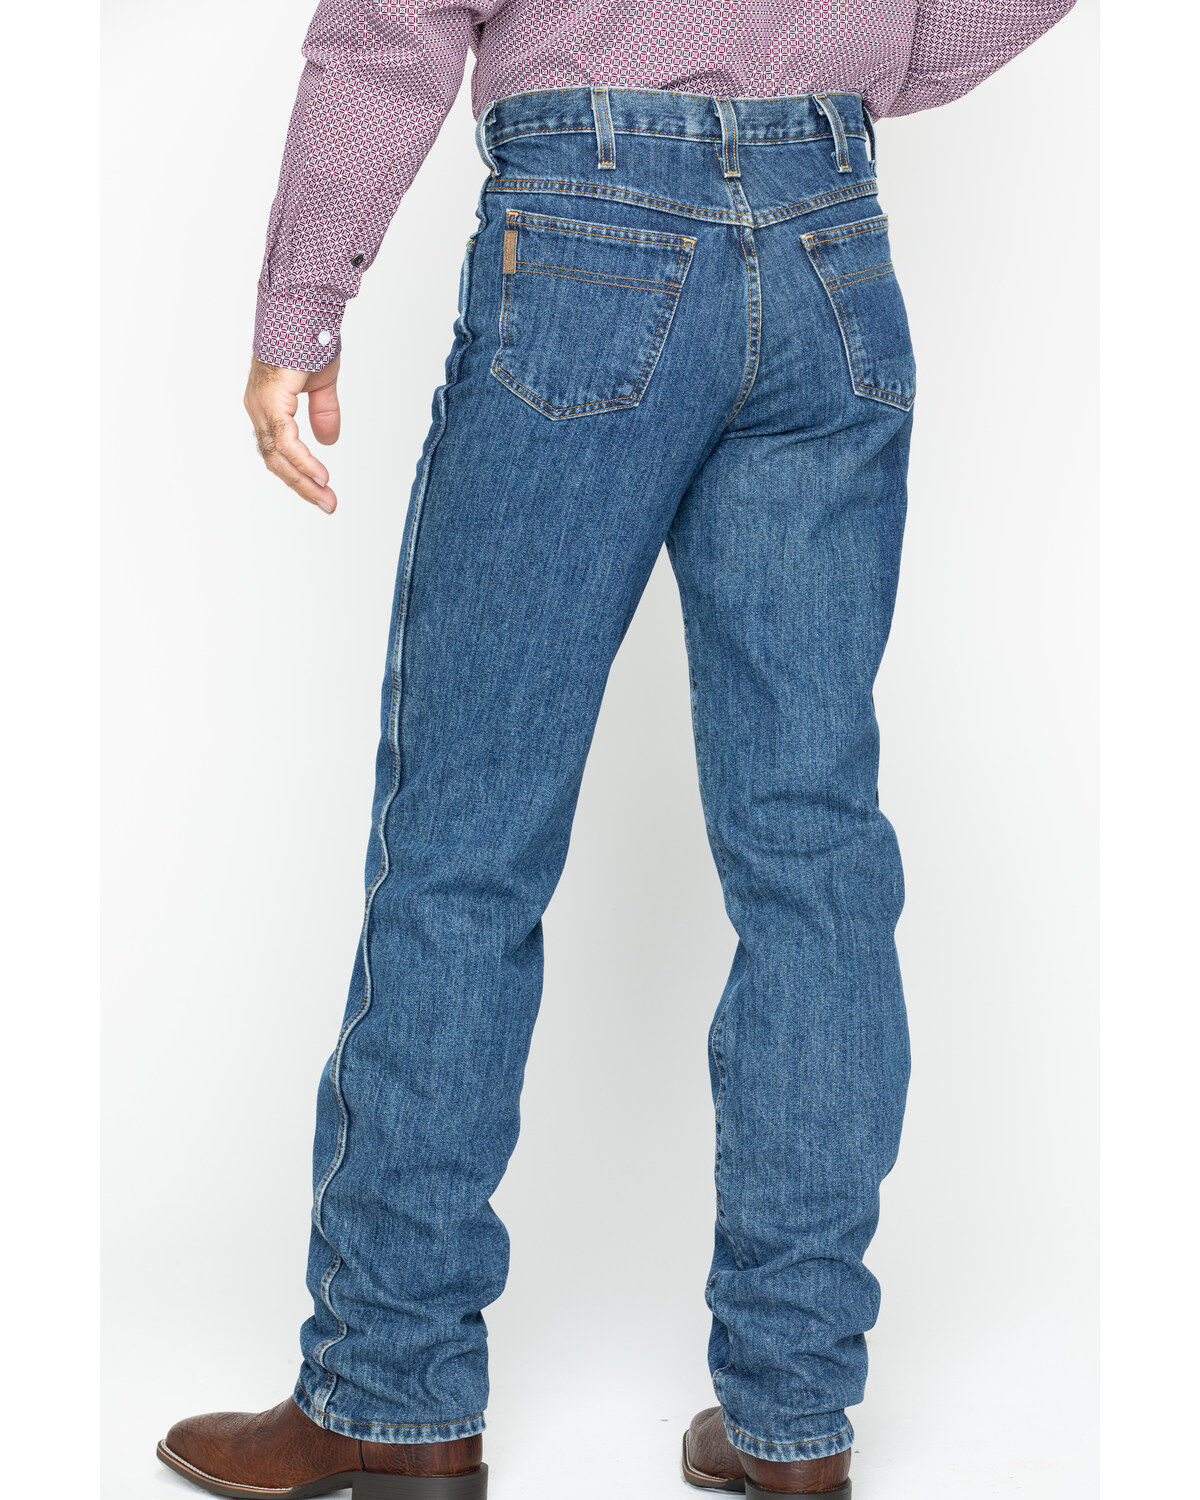 western jeans on sale